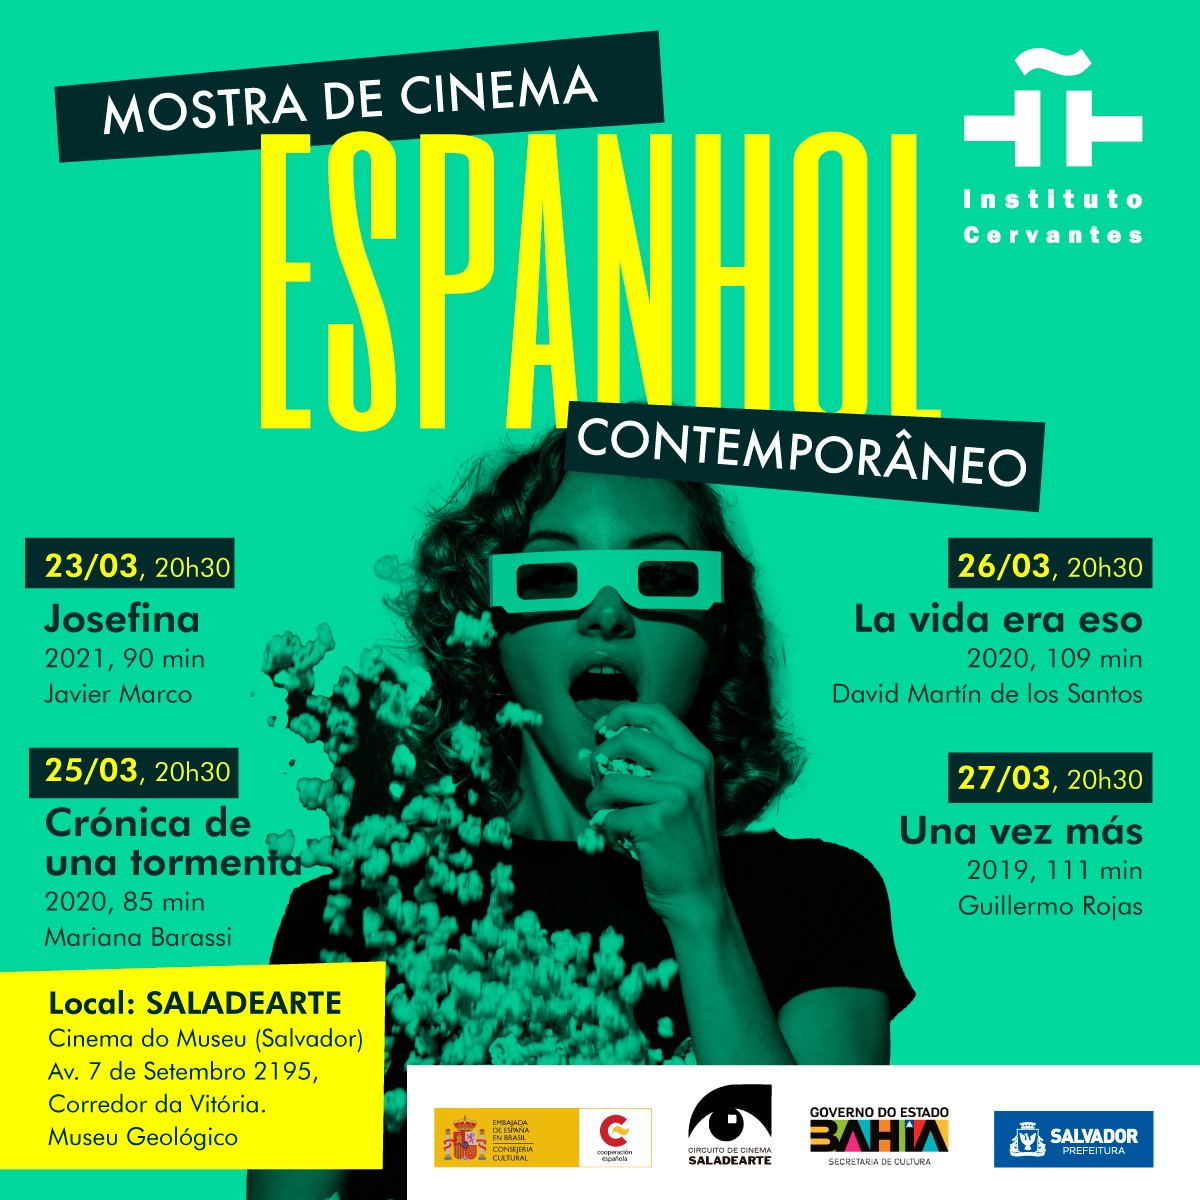 Mostra de cinema espanhol contemporâneo